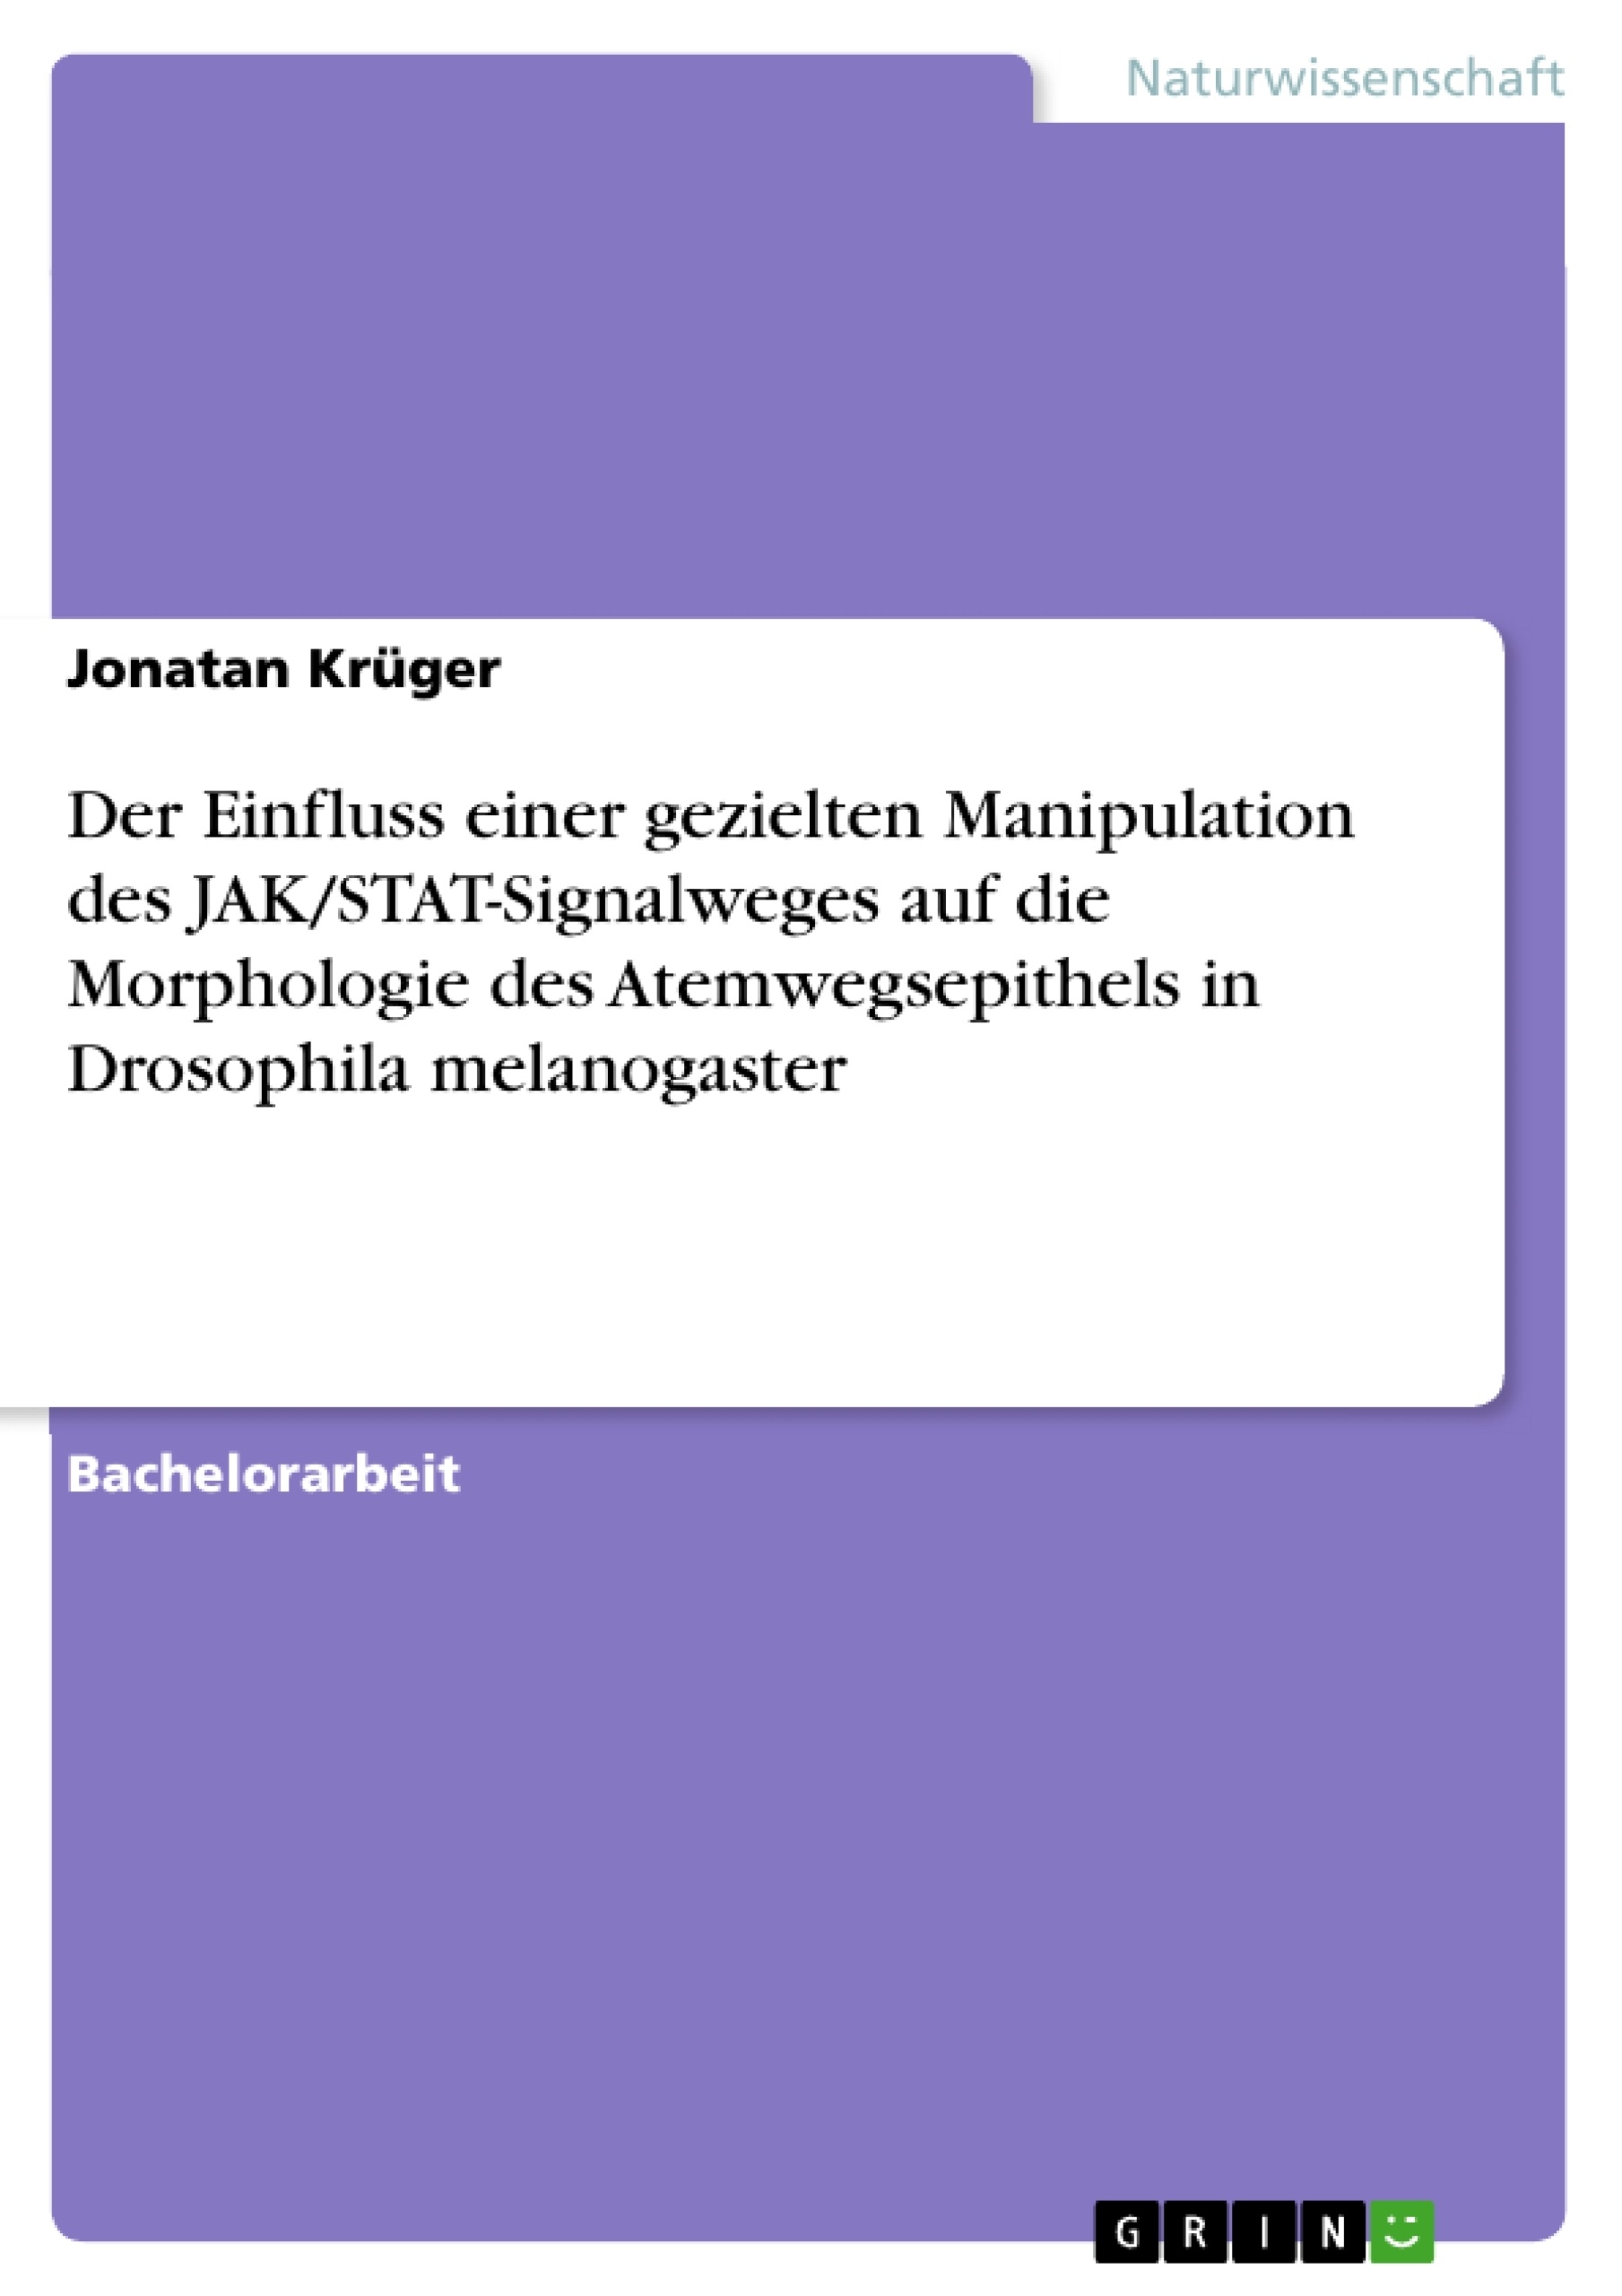 Titre: Der Einfluss einer gezielten Manipulation des JAK/STAT-Signalweges auf die Morphologie des Atemwegsepithels in Drosophila melanogaster